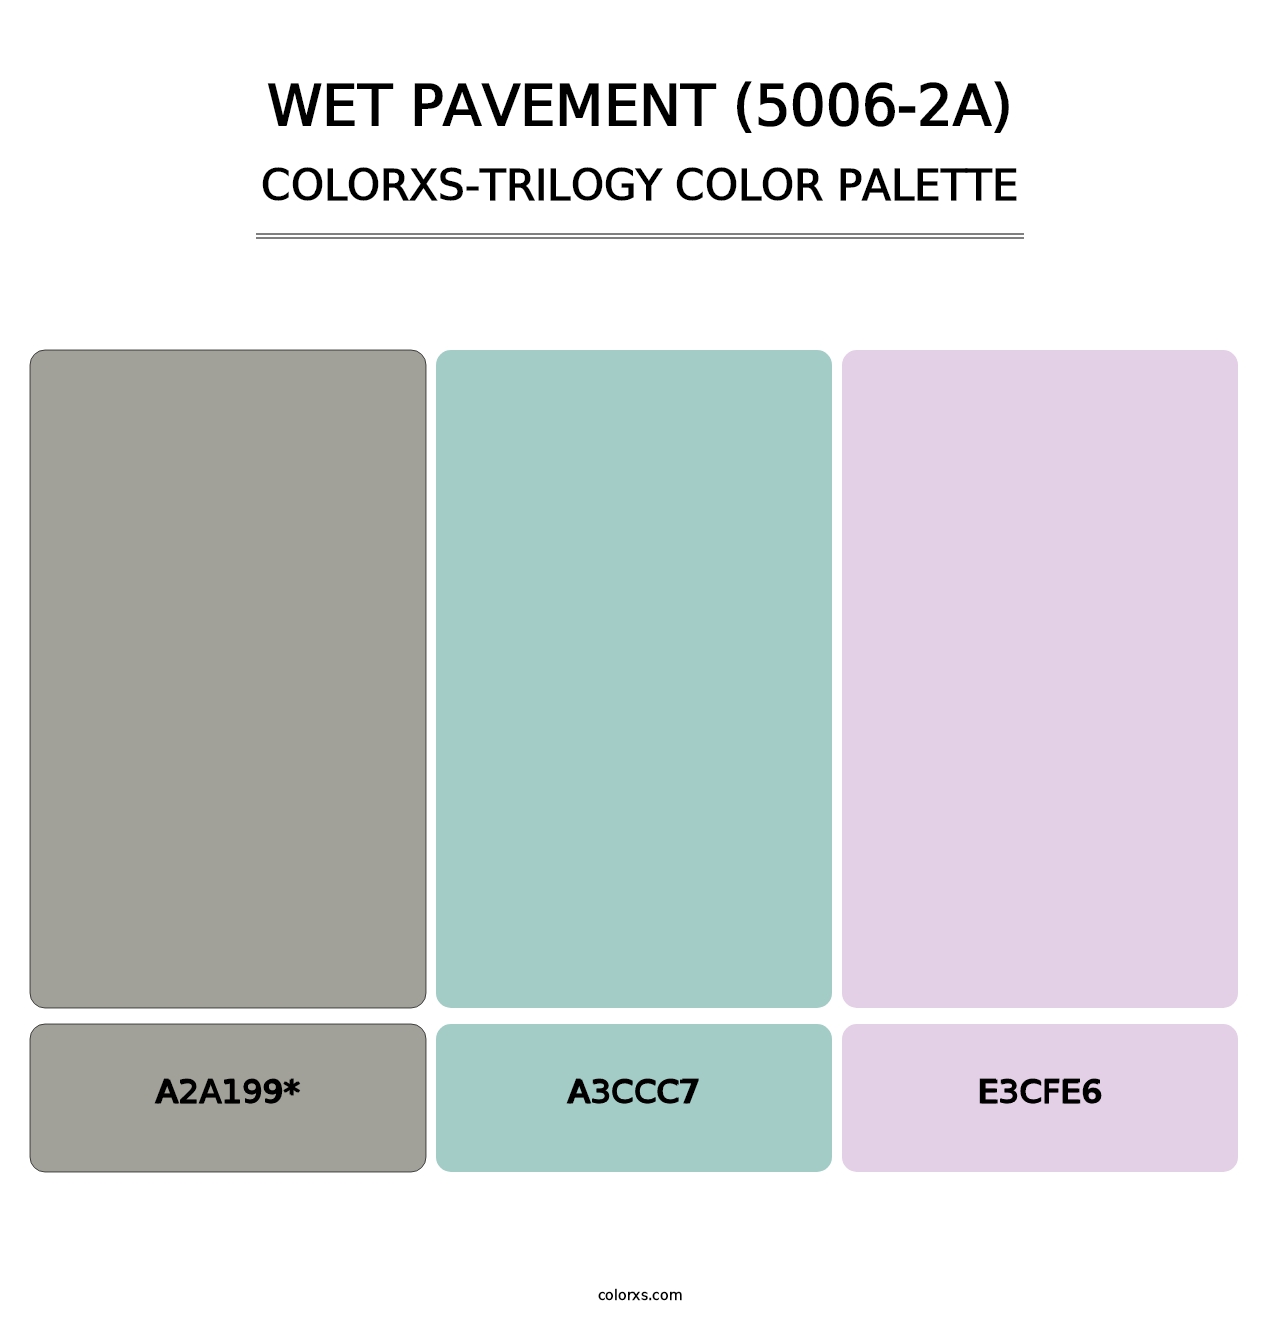 Wet Pavement (5006-2A) - Colorxs Trilogy Palette